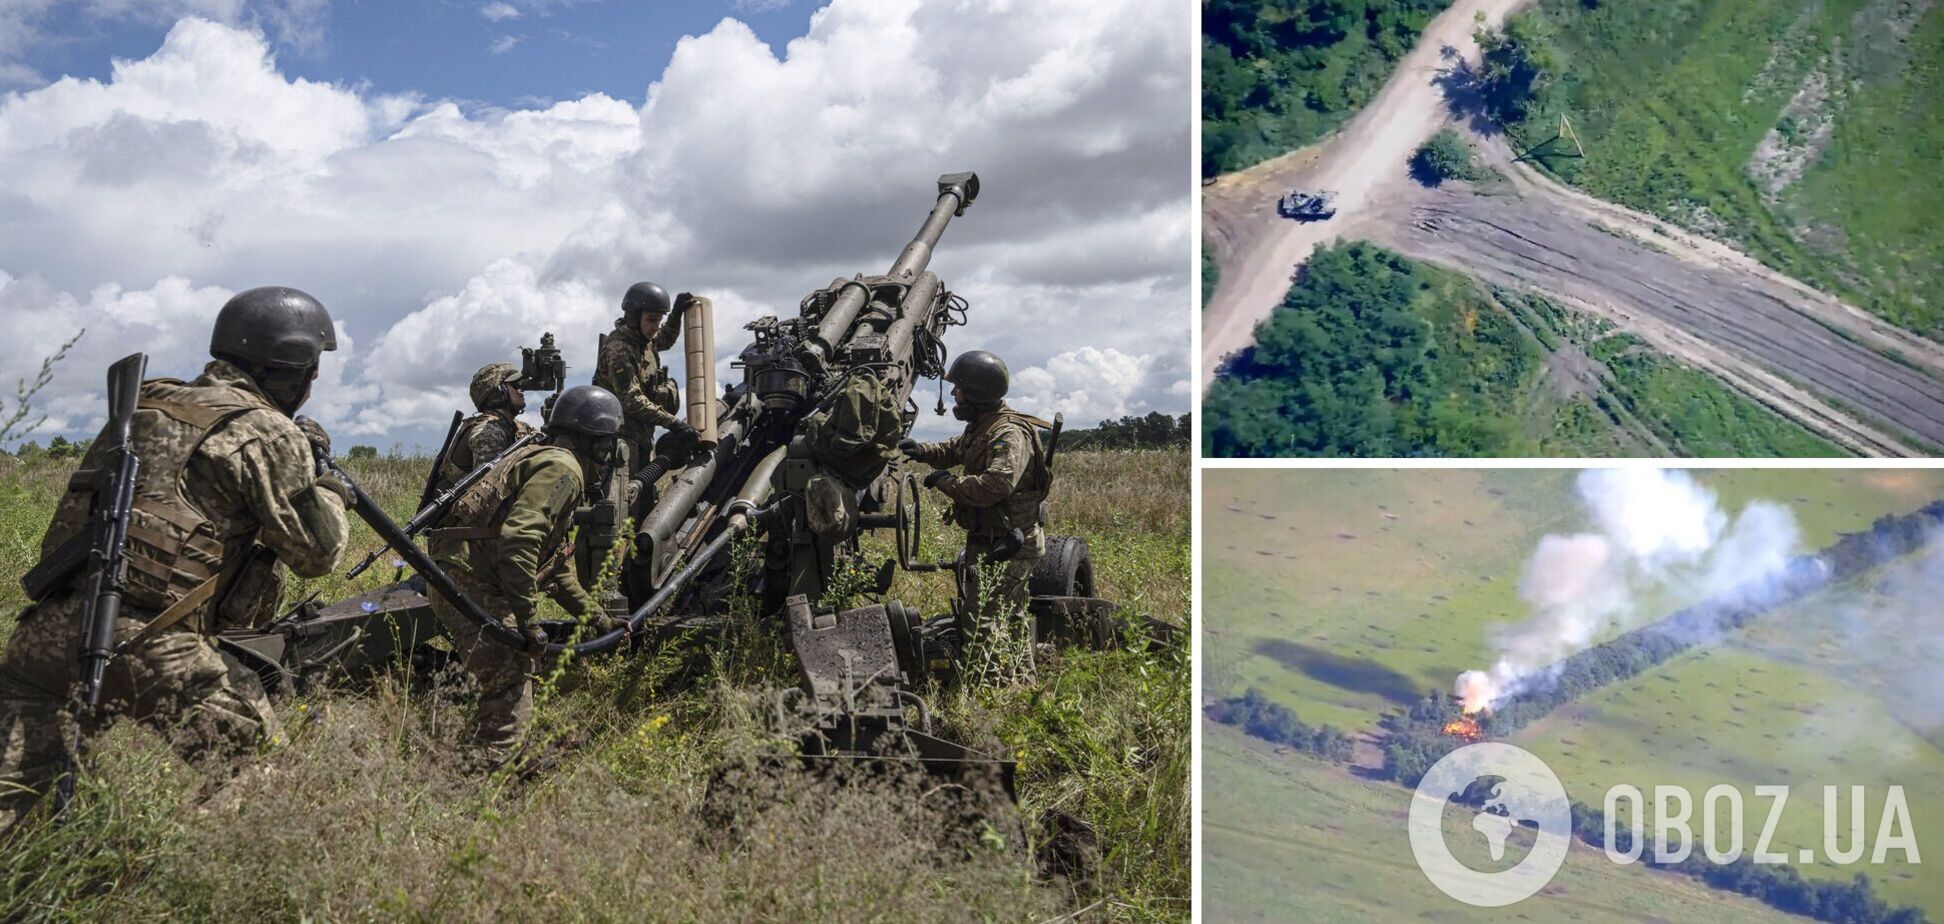 Українська артилерія філігранно знищила ЗРК 'Стріла' та САУ 'Мста-С' окупантів. Відео